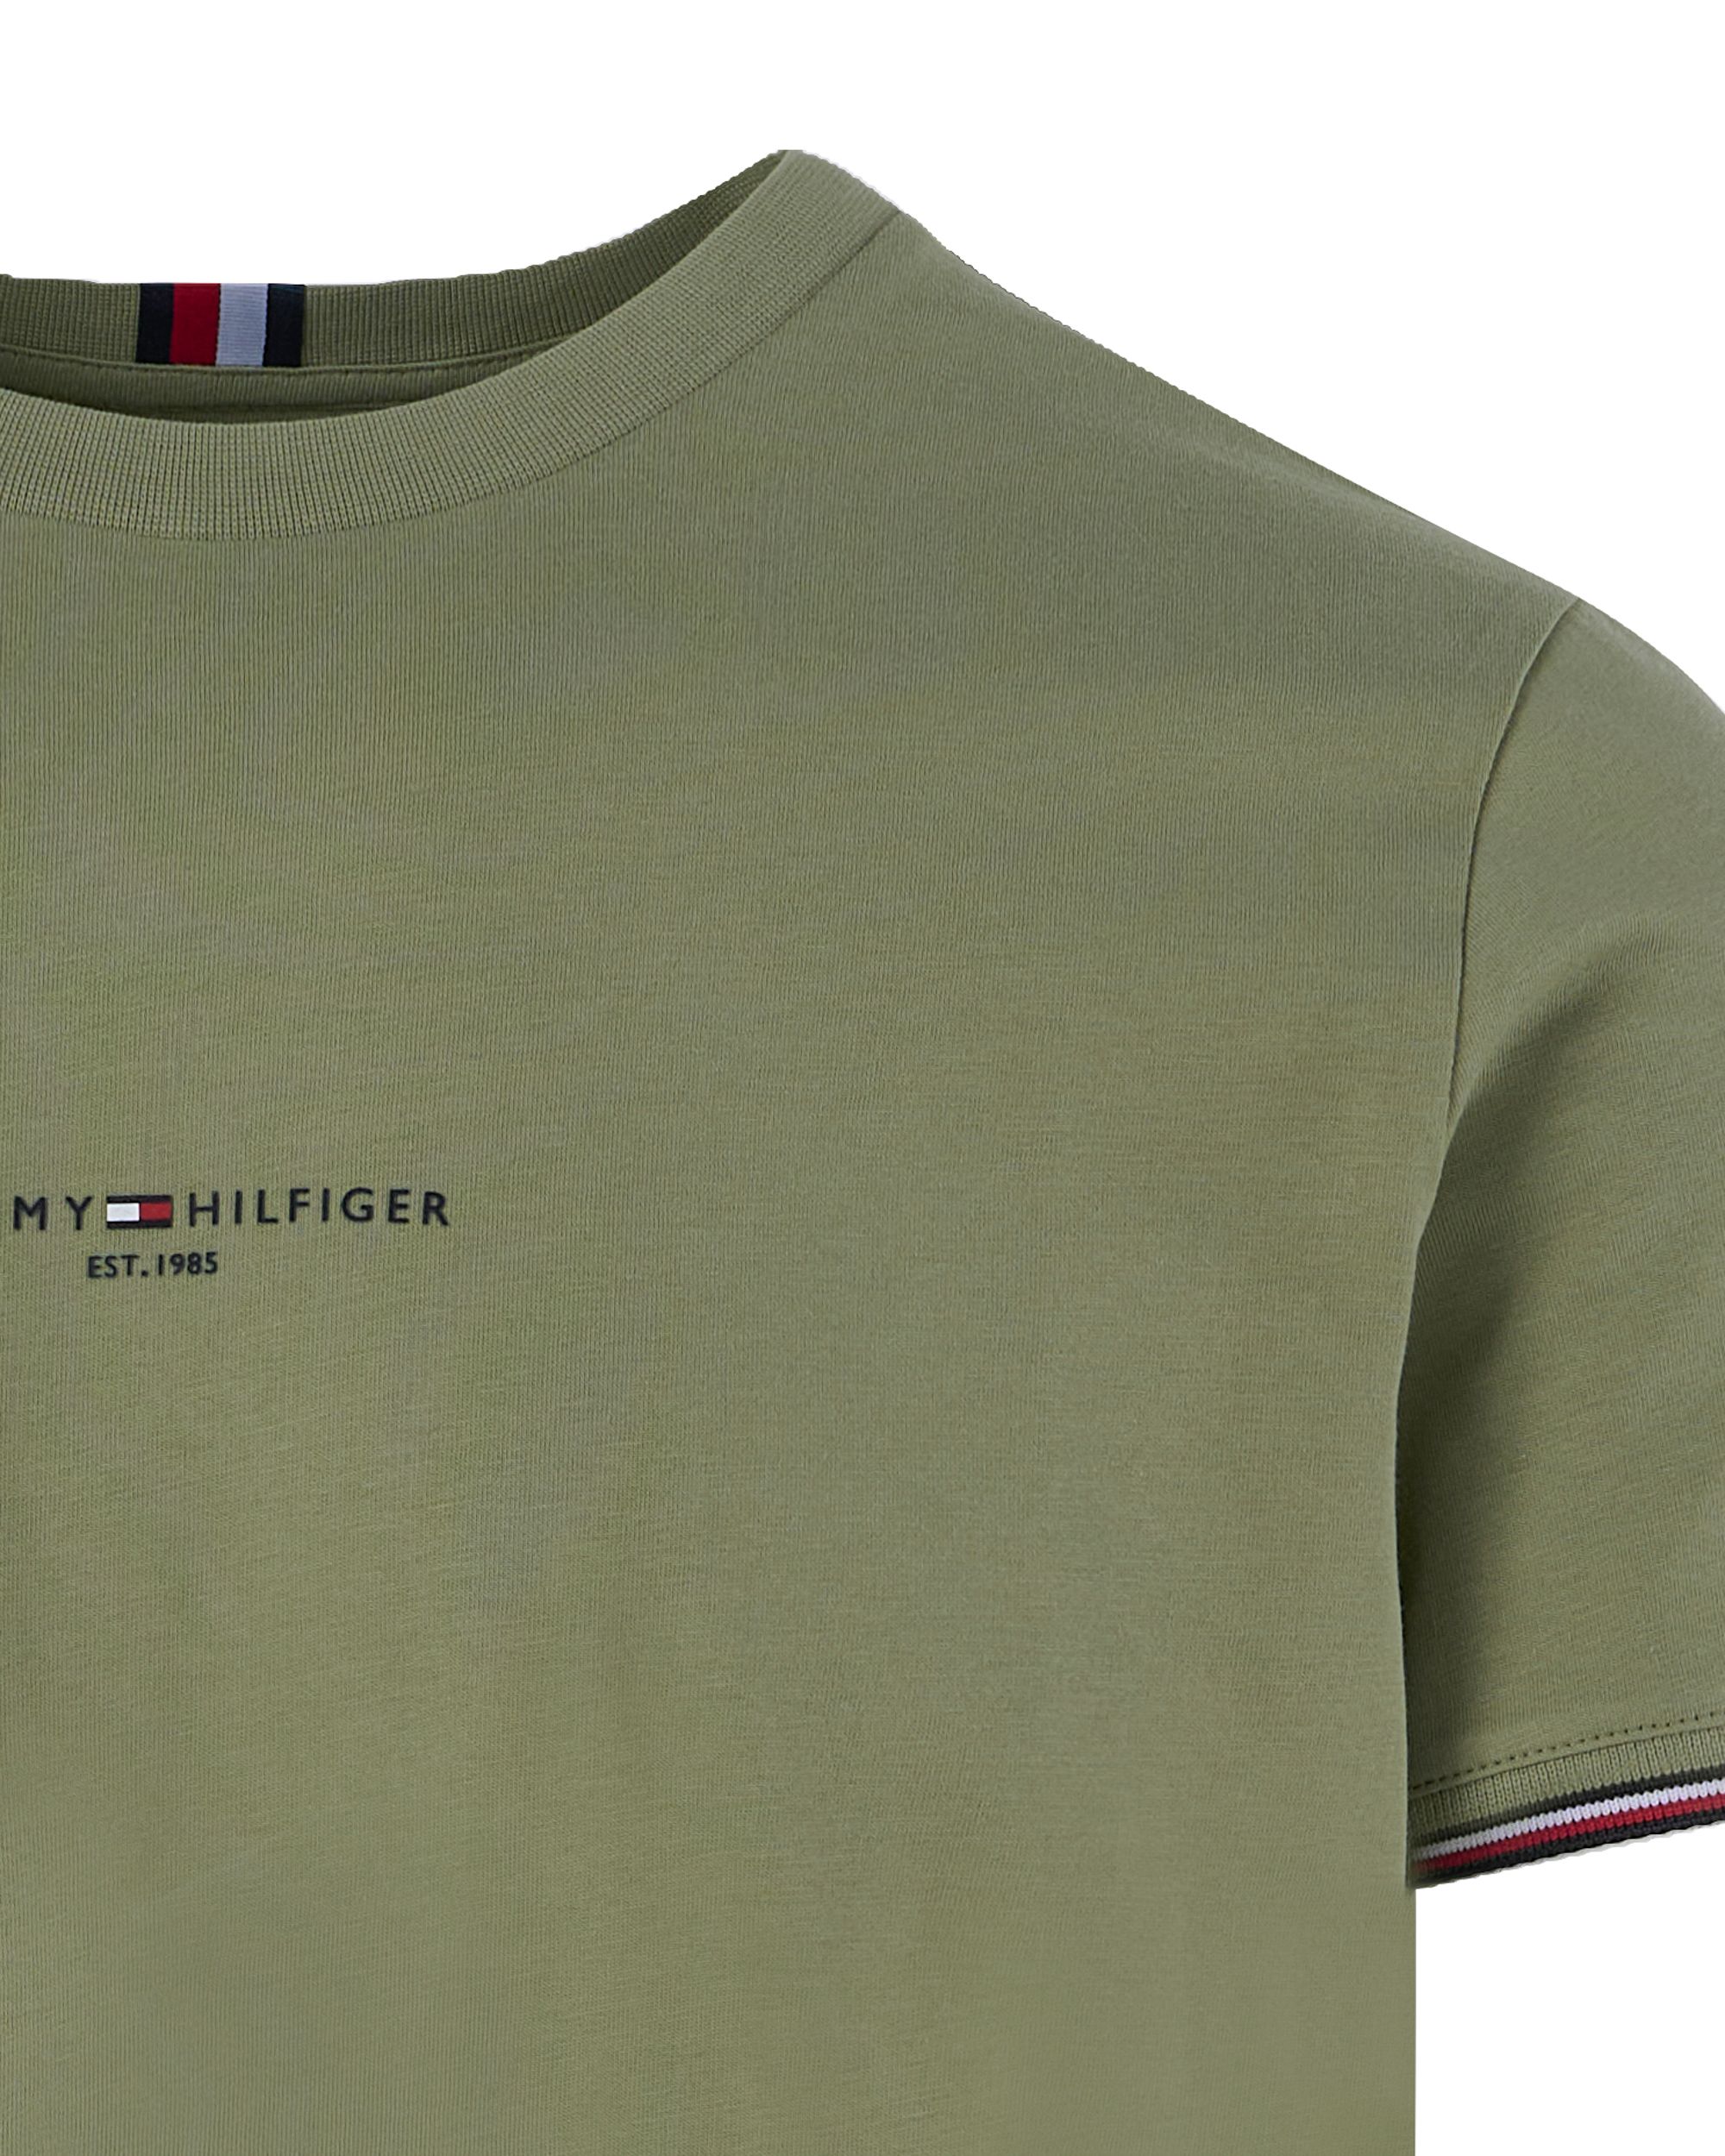 Tommy Hilfiger Menswear T-shirt KM Groen 094648-001-L